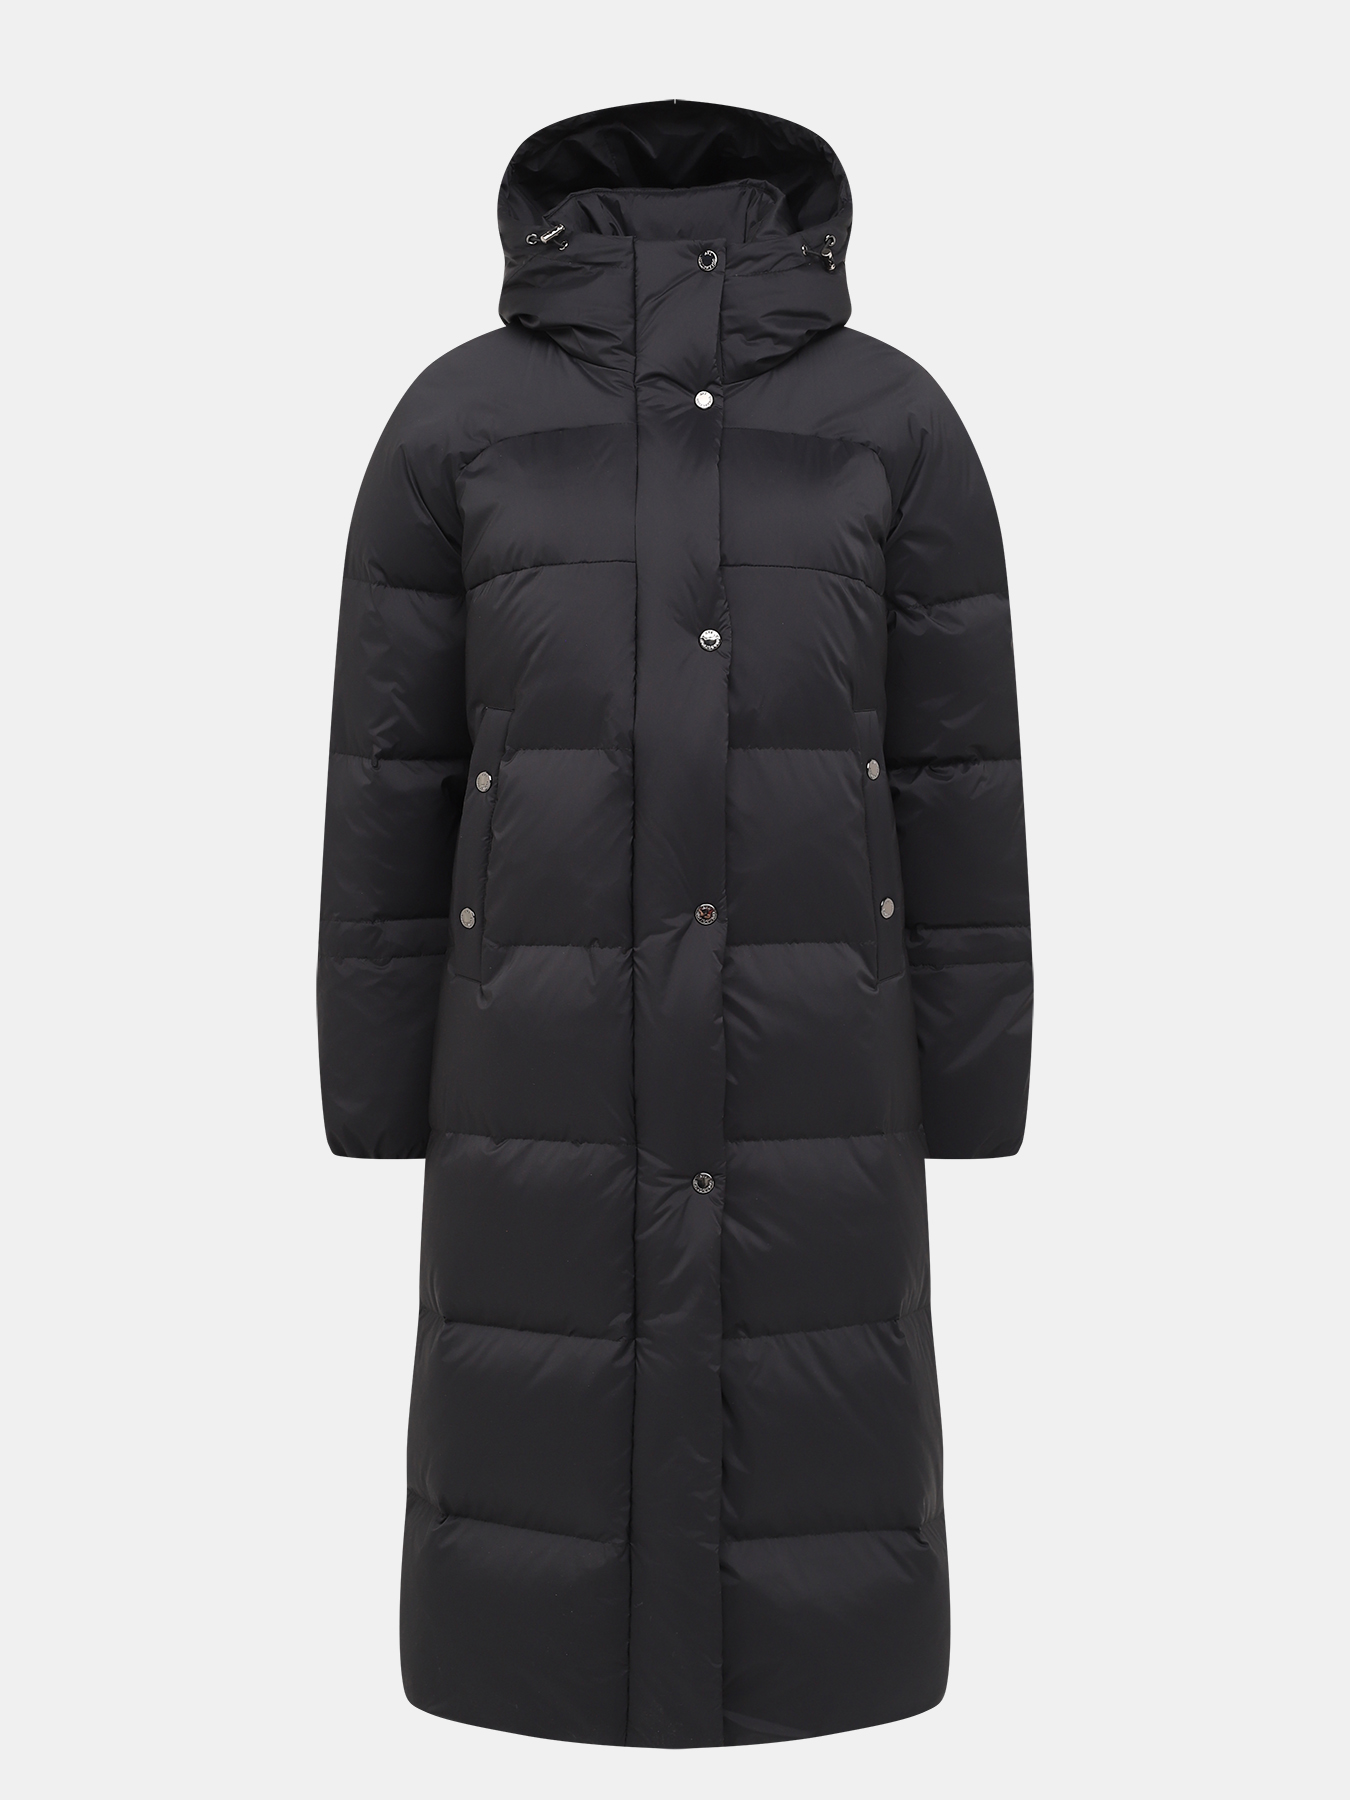 Пальто зимнее AVI 433511-025, цвет темно-серый, размер 48